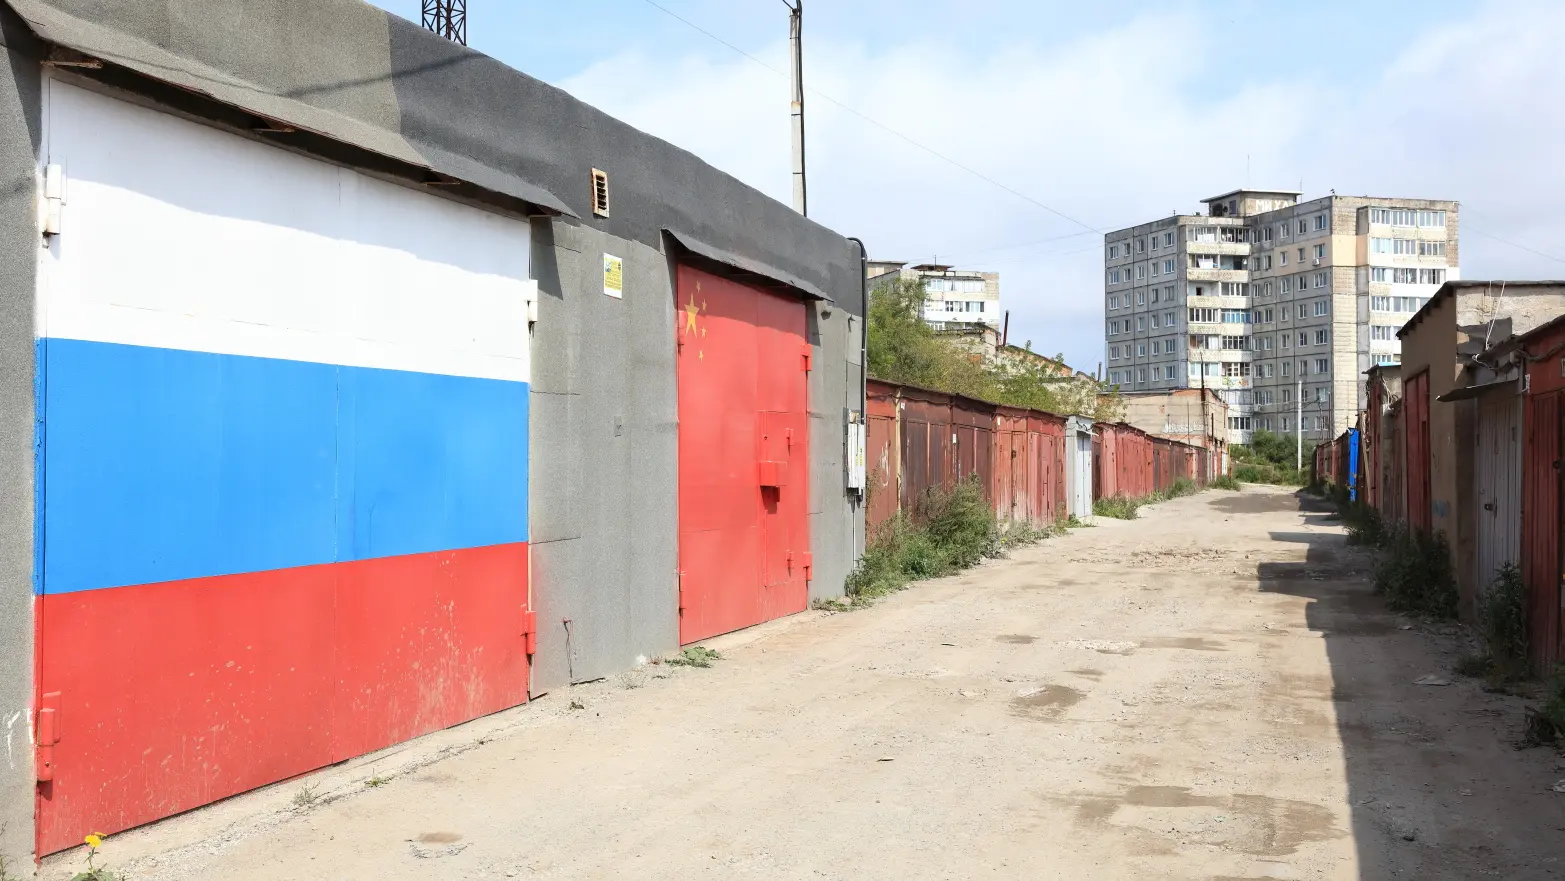 garážová vrata s ruskou respektive čínskou vlajkou